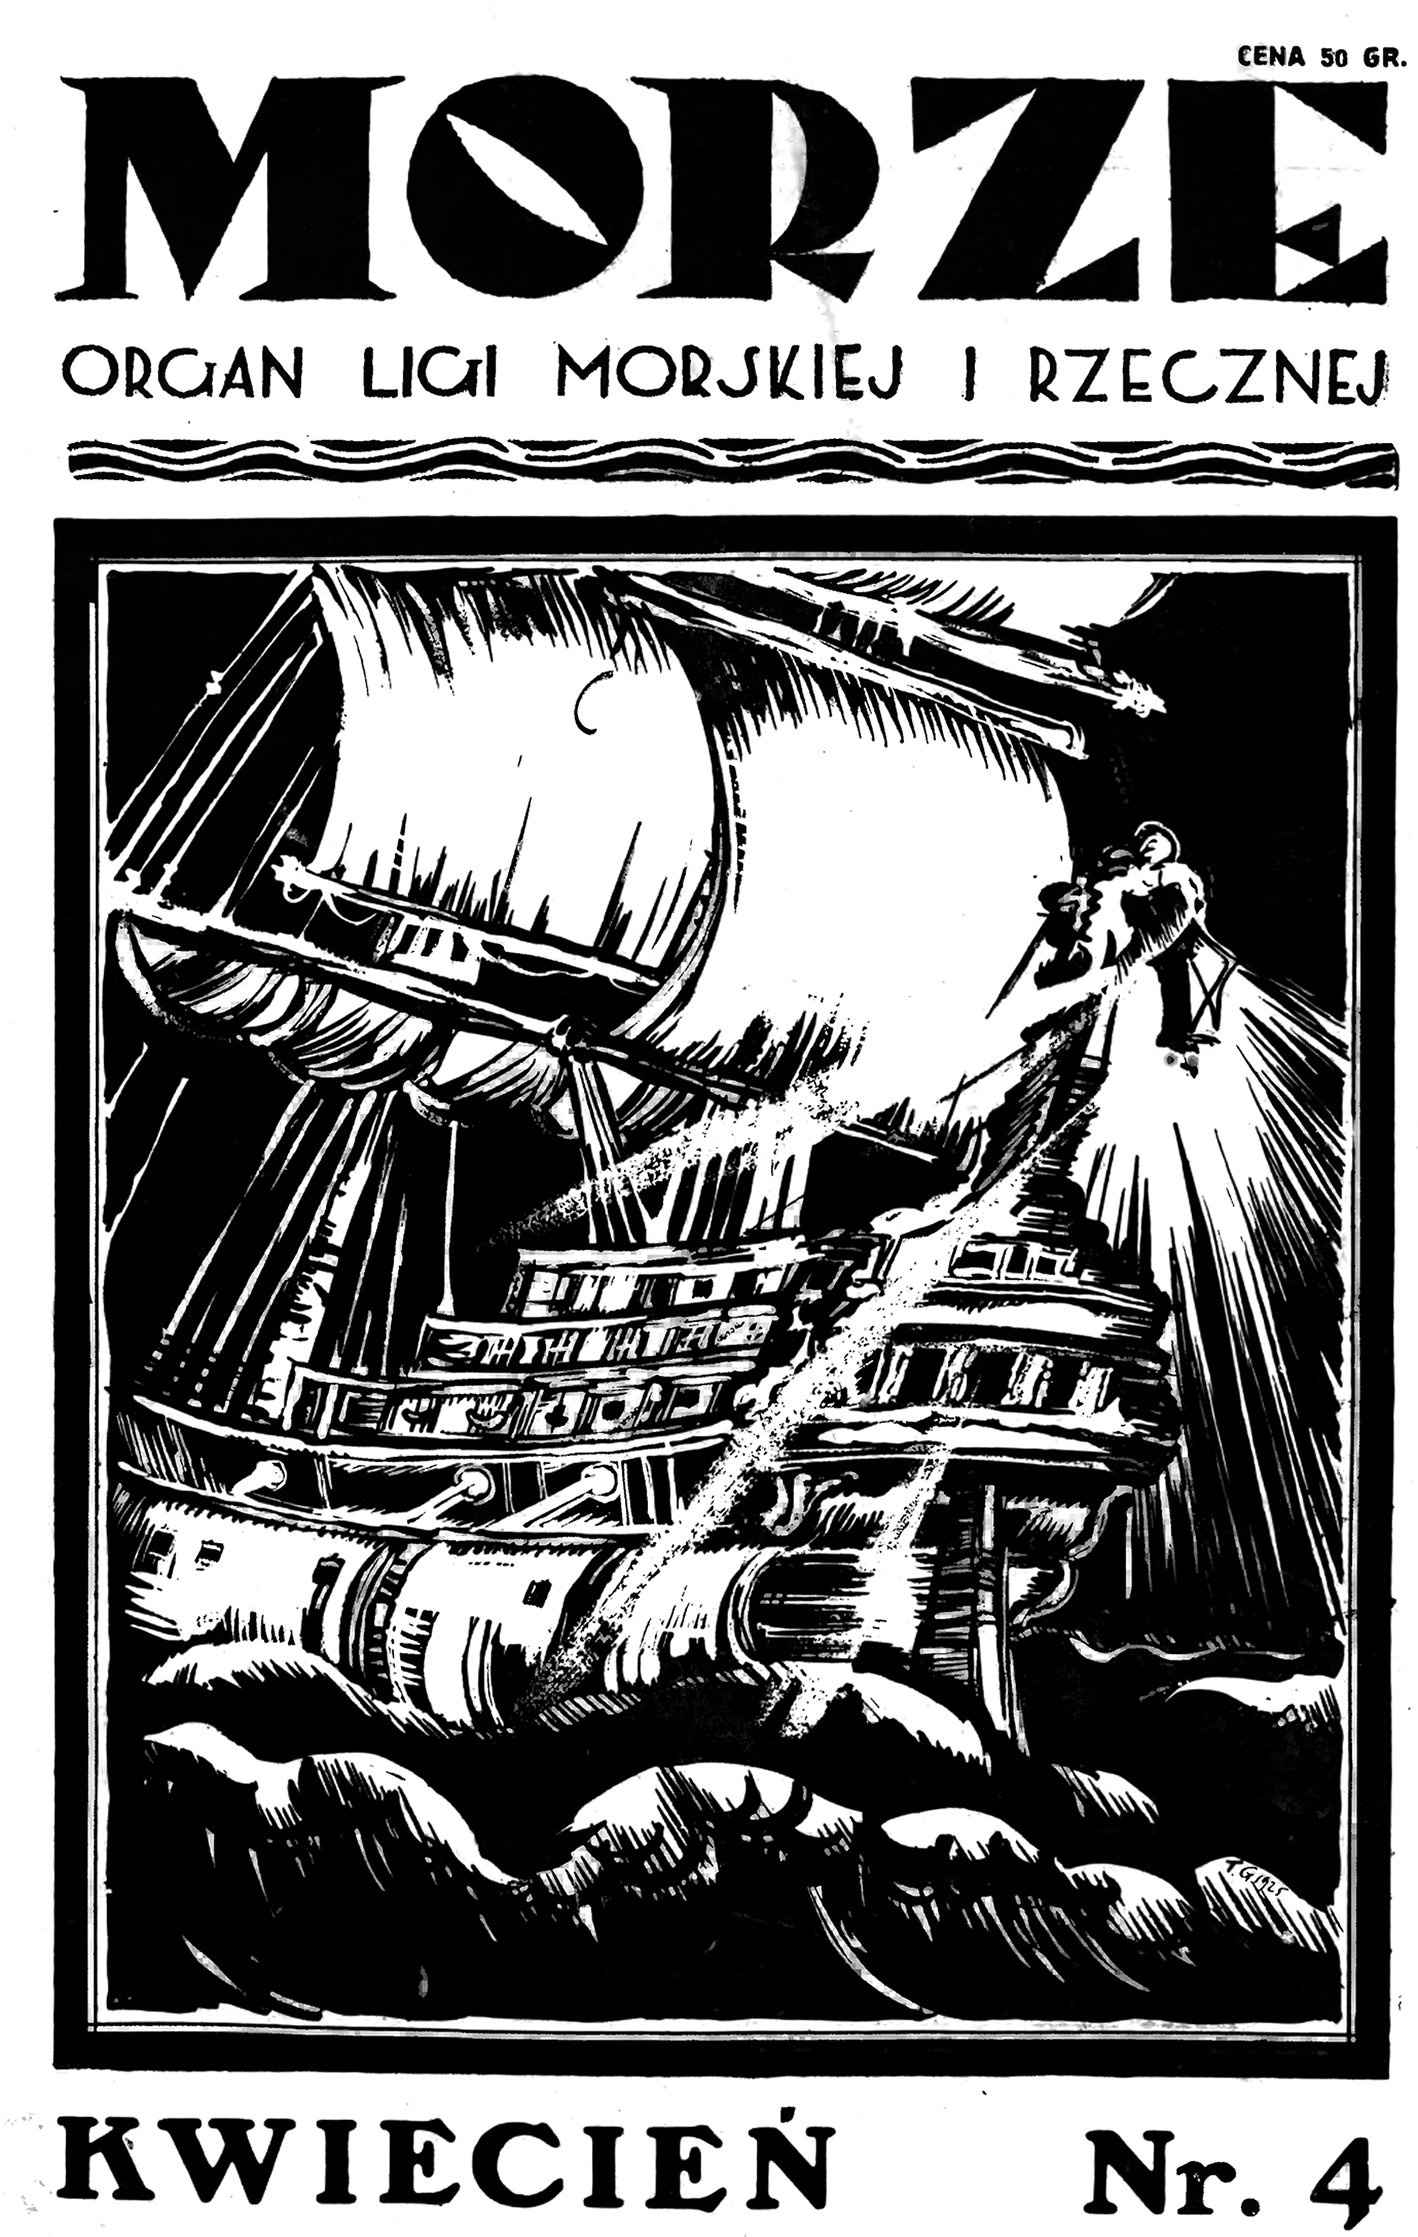 Morze: organ Ligi Morskiej i Rzecznej. - 1925, s. 4